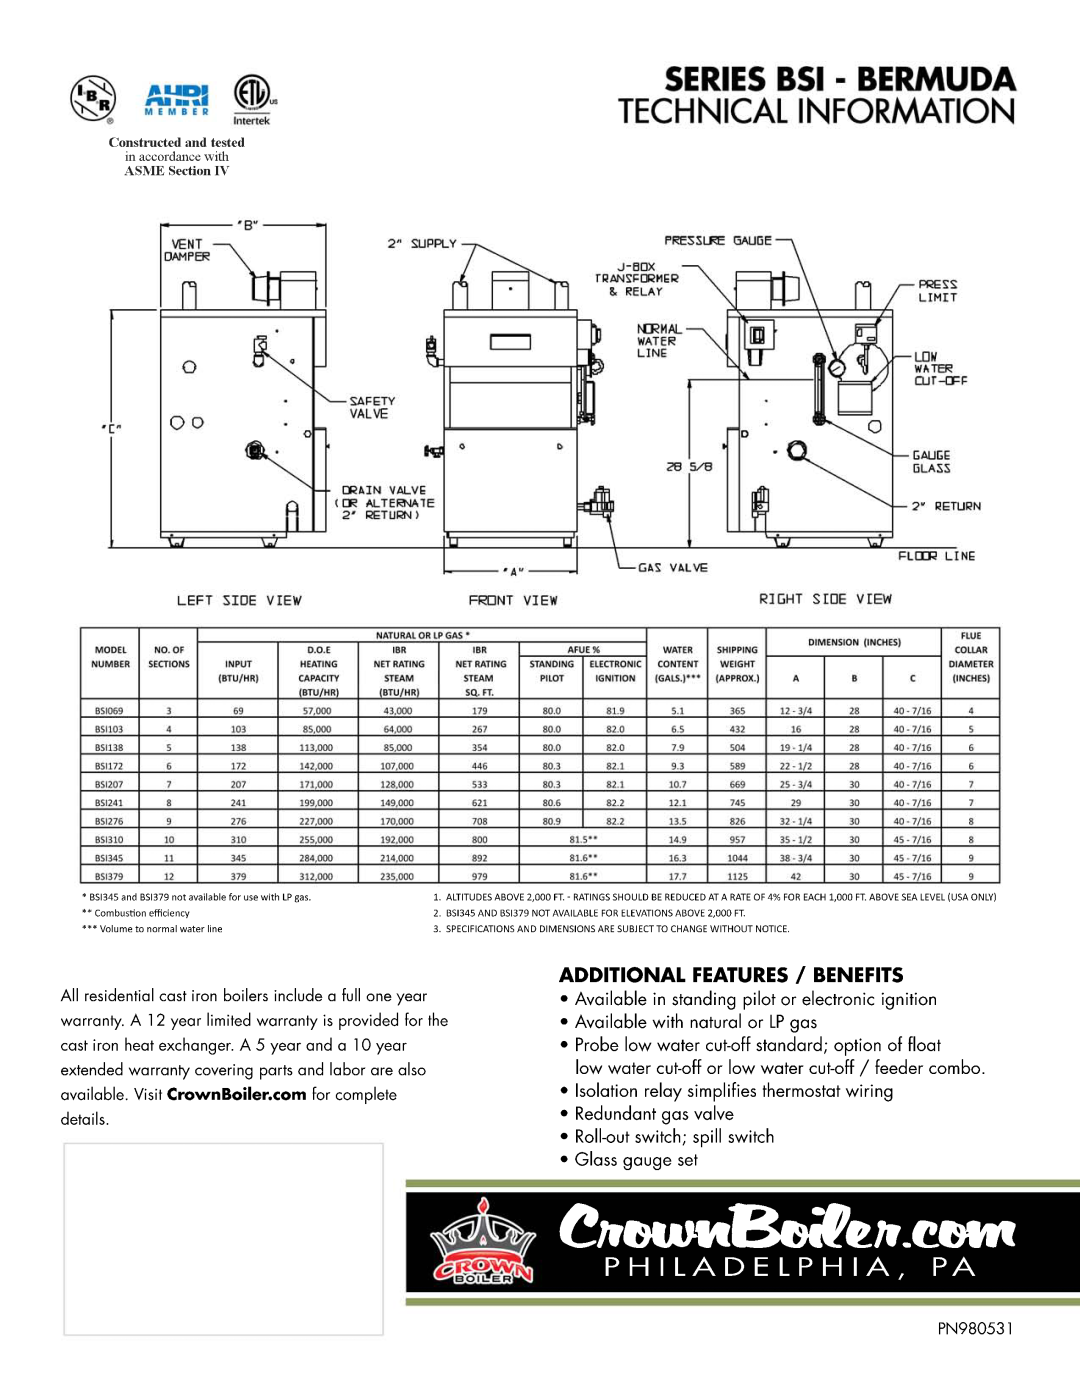 Crown Boiler HTR3465 manual 